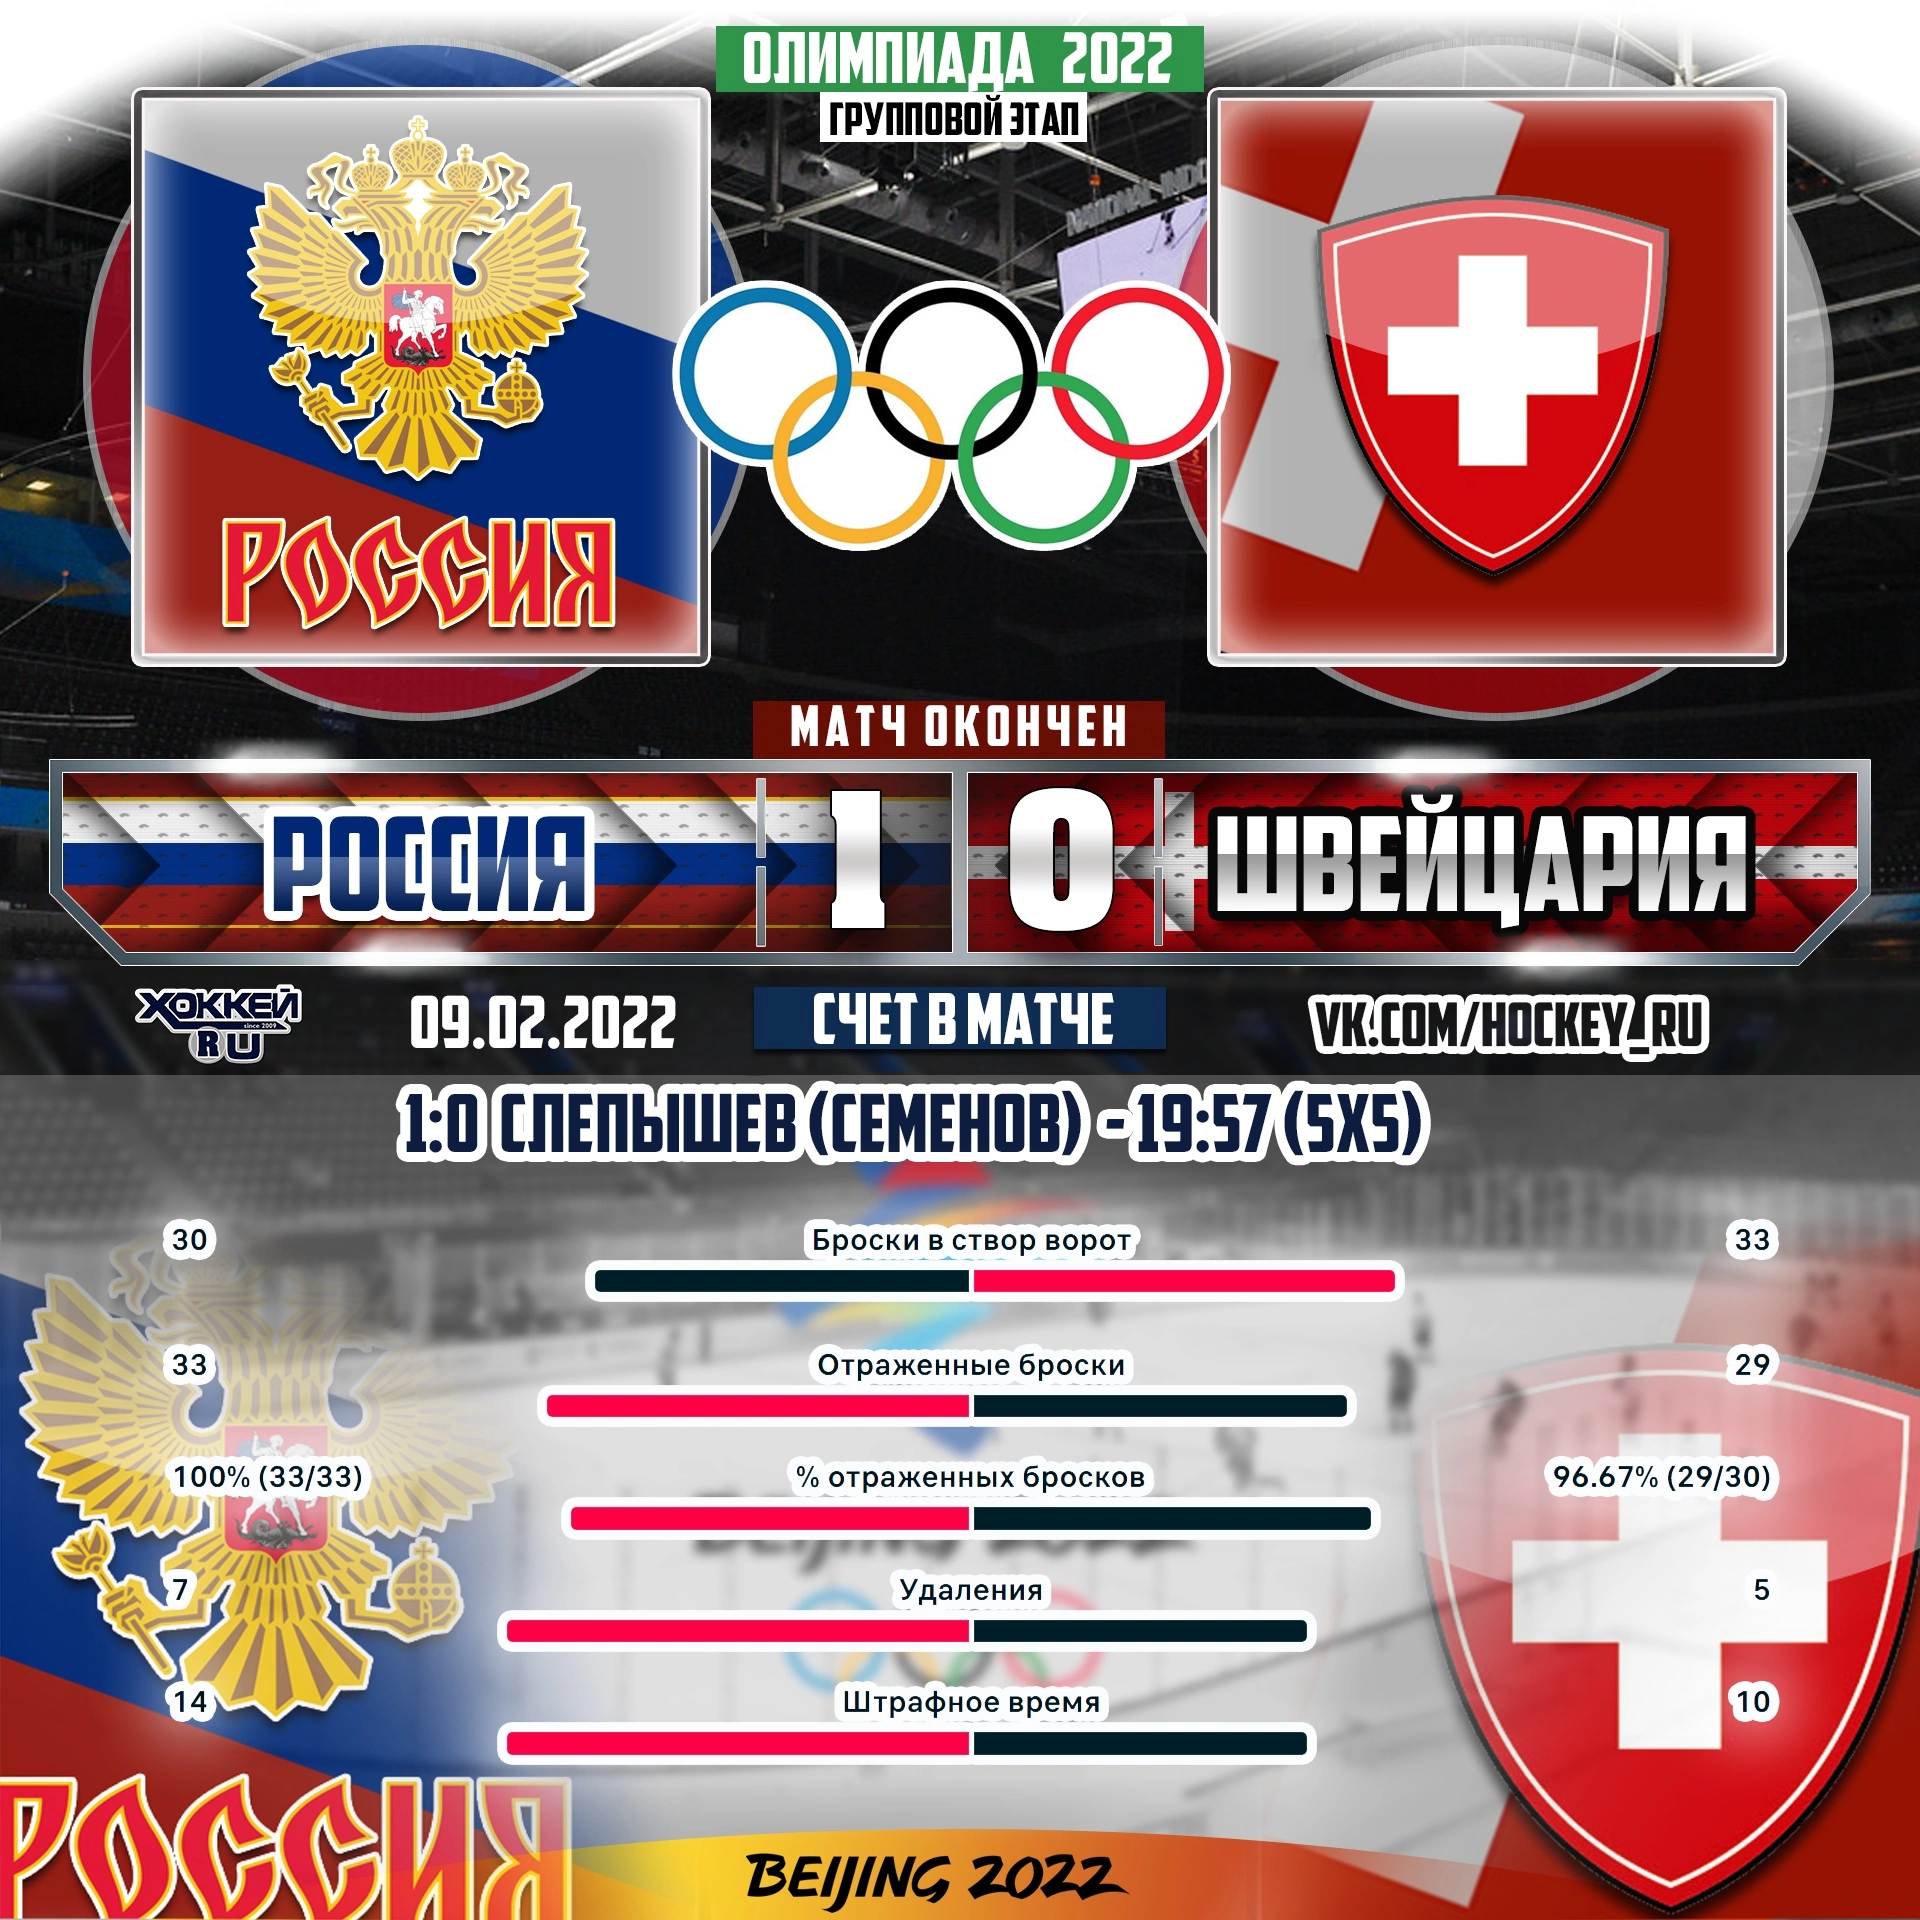 Сборная России, не без труда, обыграла Швейцарию в первом матче на Олимпиаде со счётом 1:0. Разбор матча